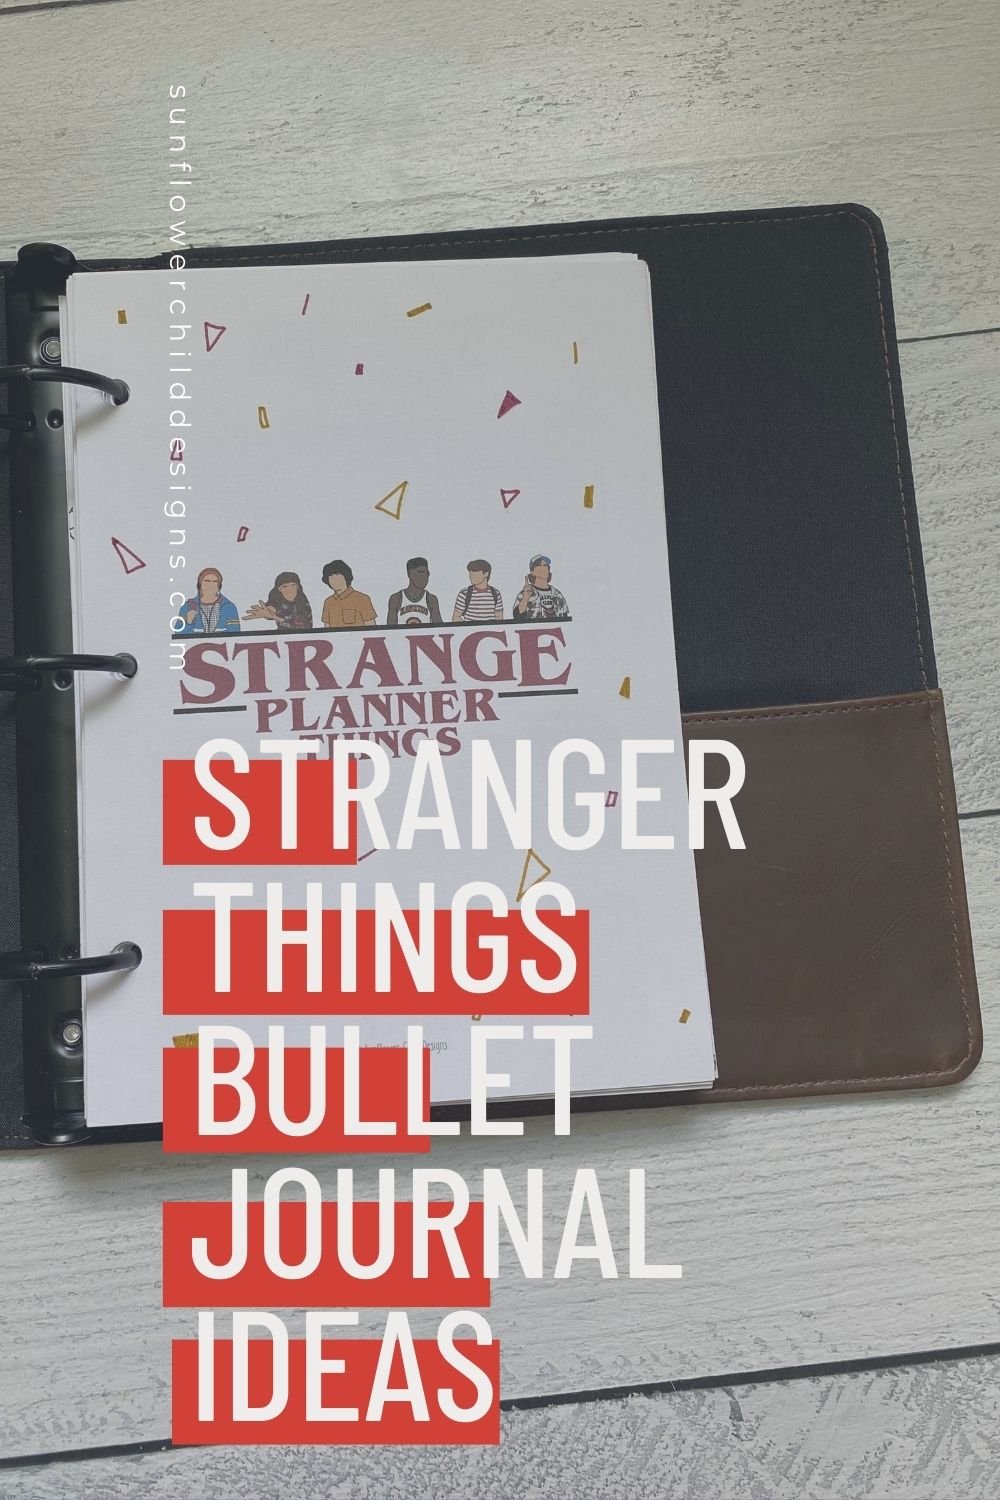 stranger-things-bullet-journal-ideas-6.jpg